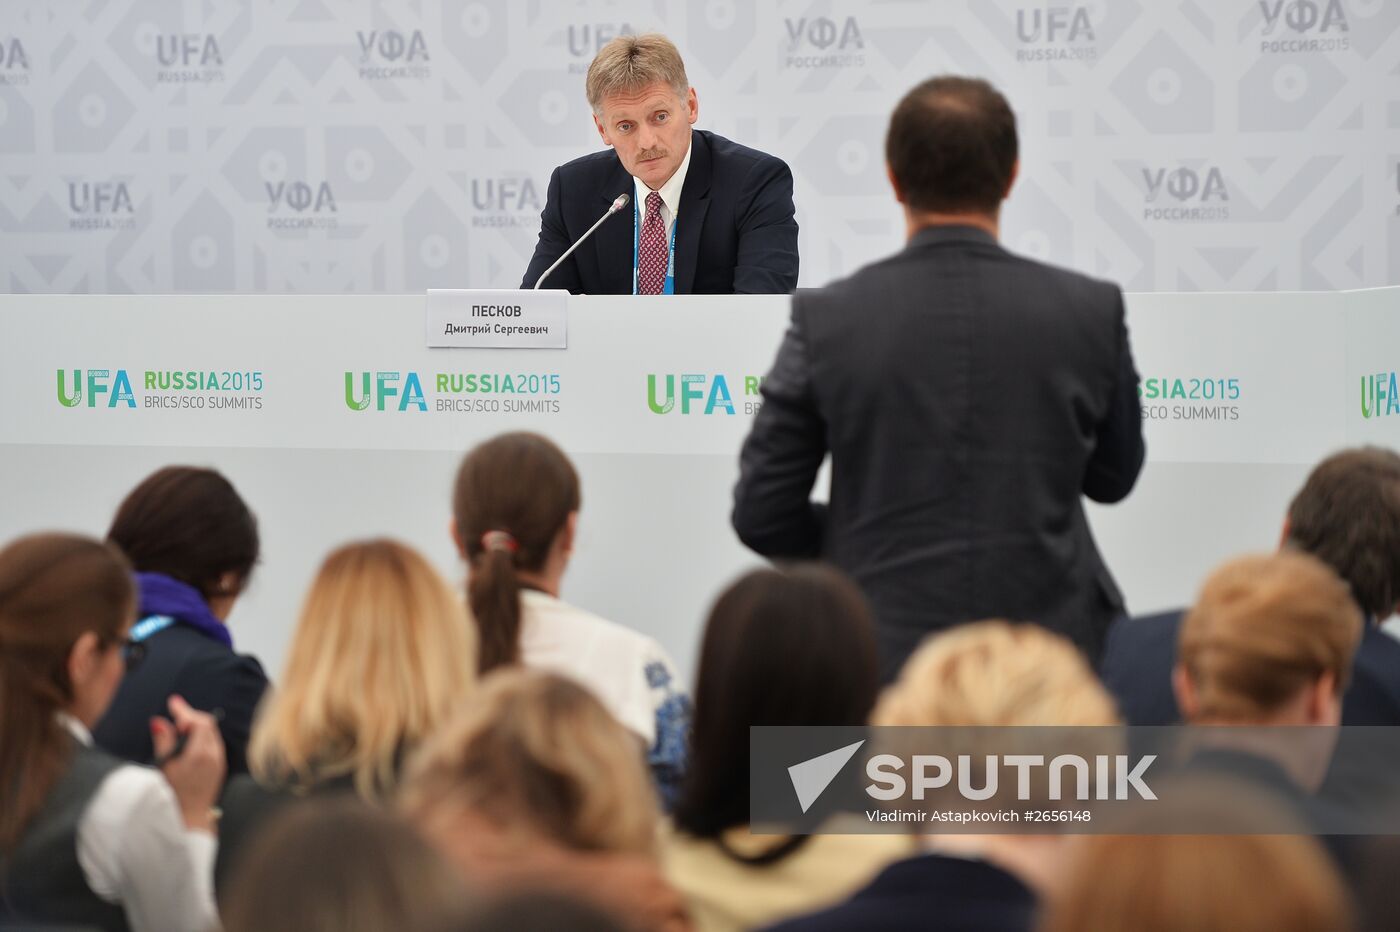 Press briefing by Russian Presidential Press Secretary Dmitry Peskov